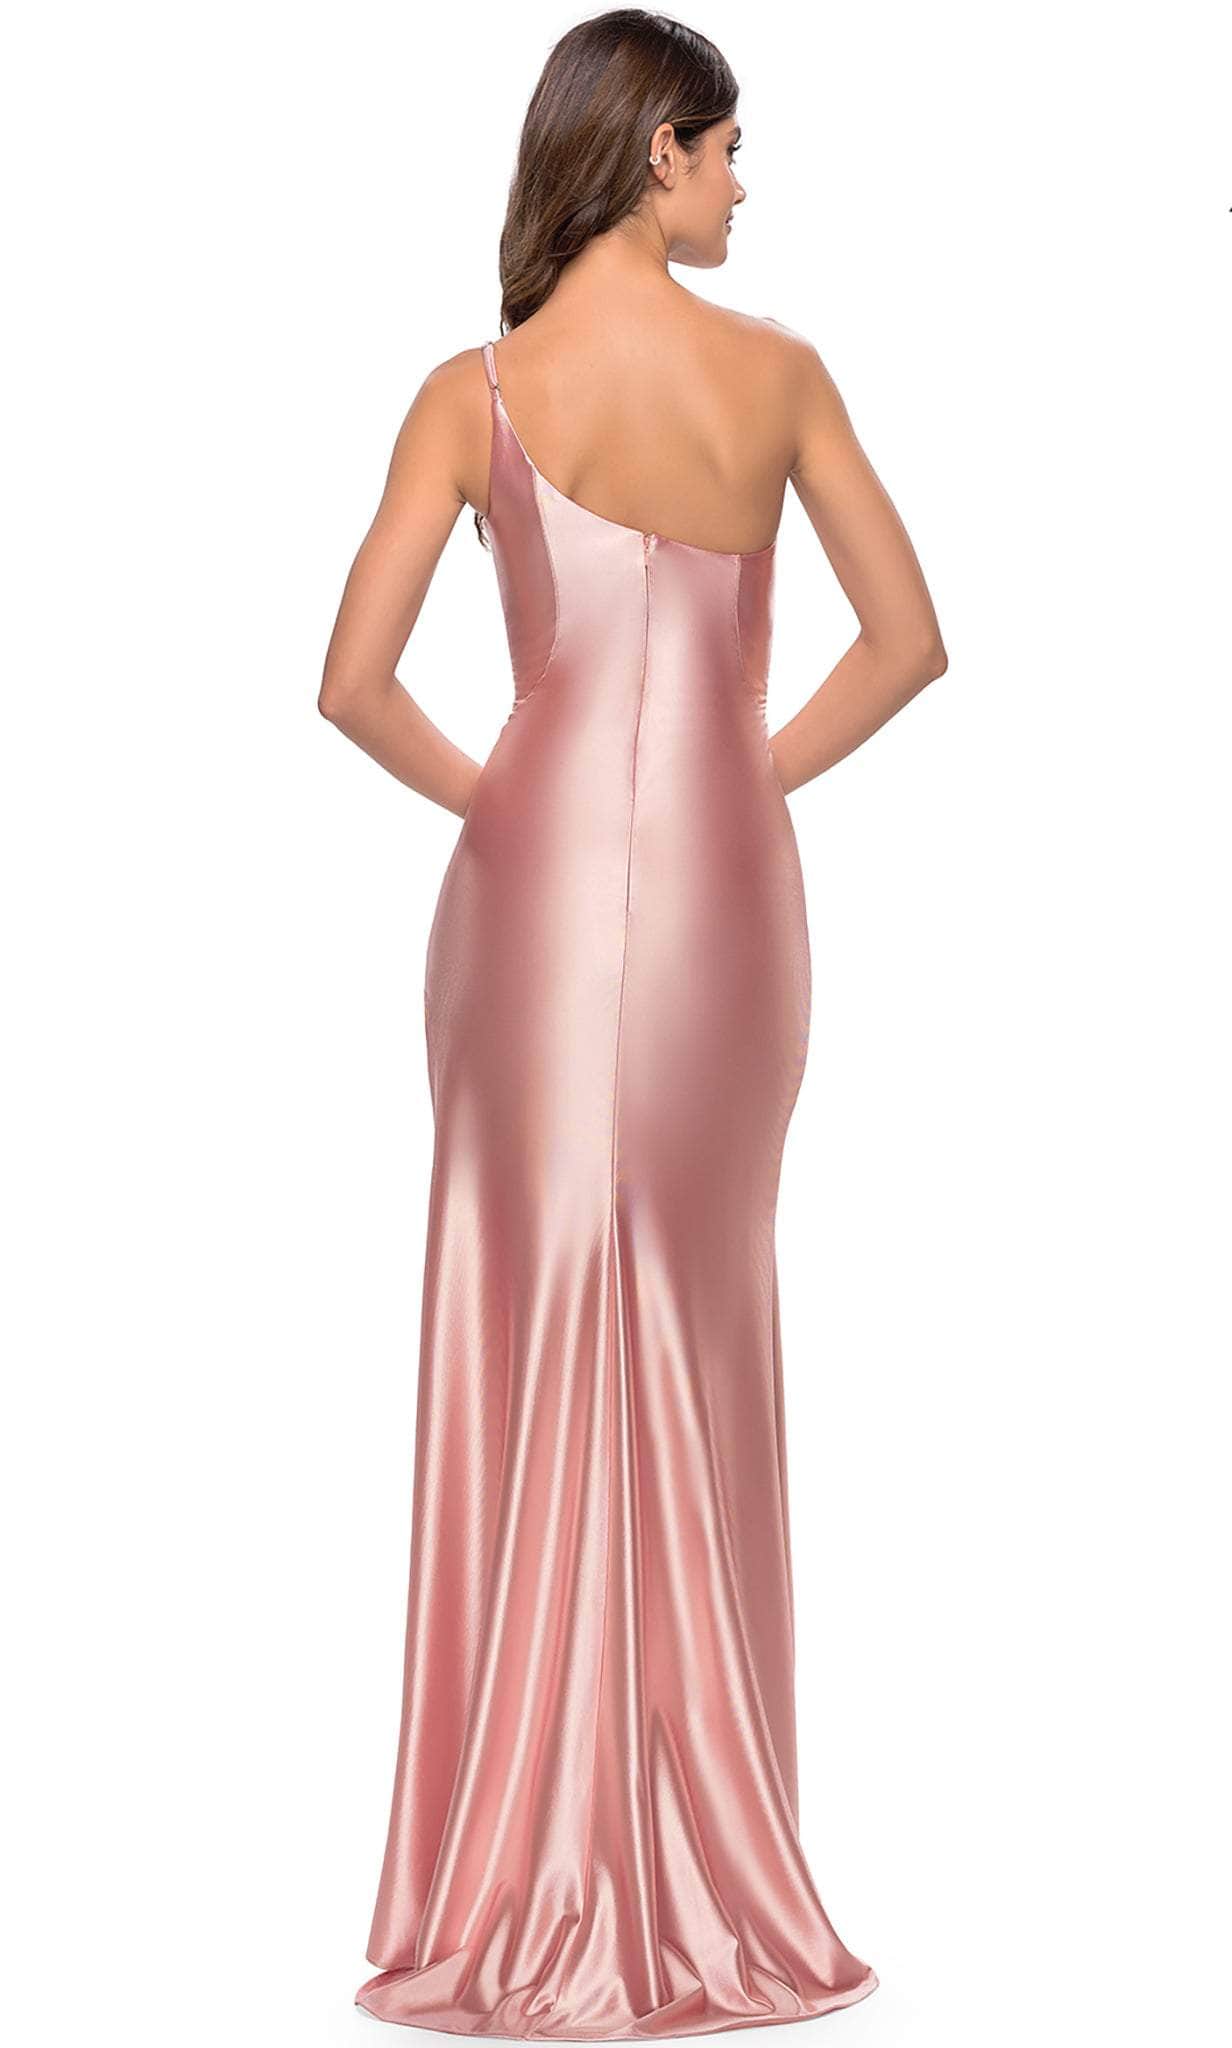 La Femme 31391 - One Shoulder Dress